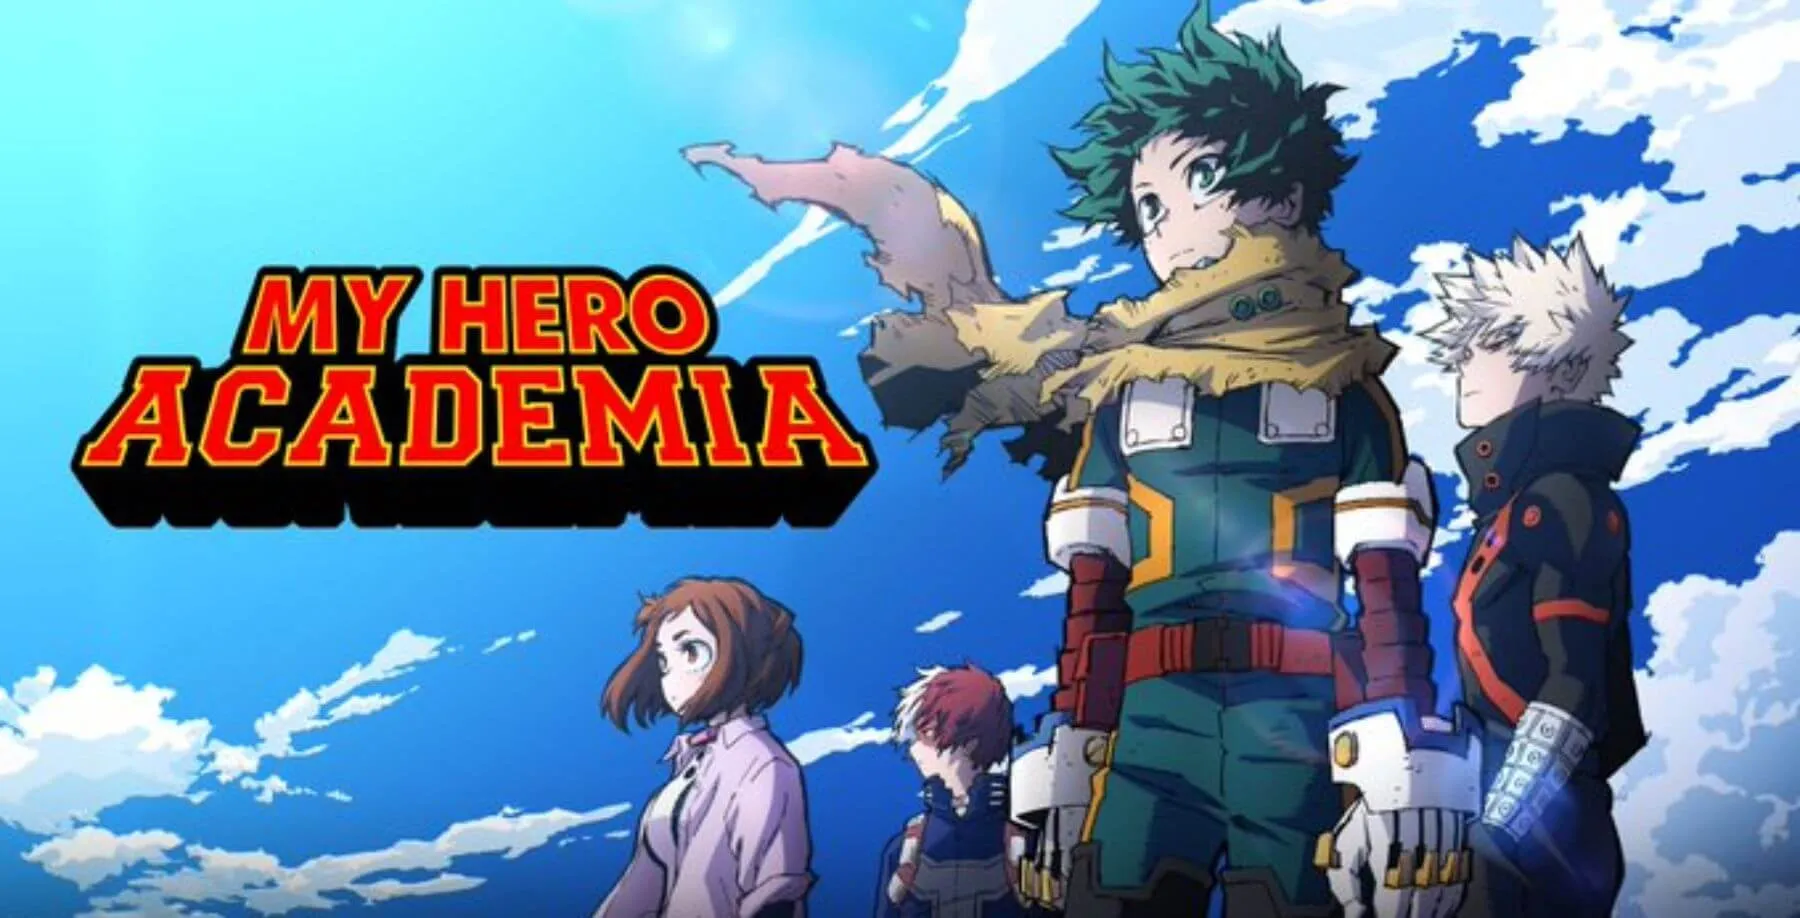 Logo de My Hero Academia com personagens do anime